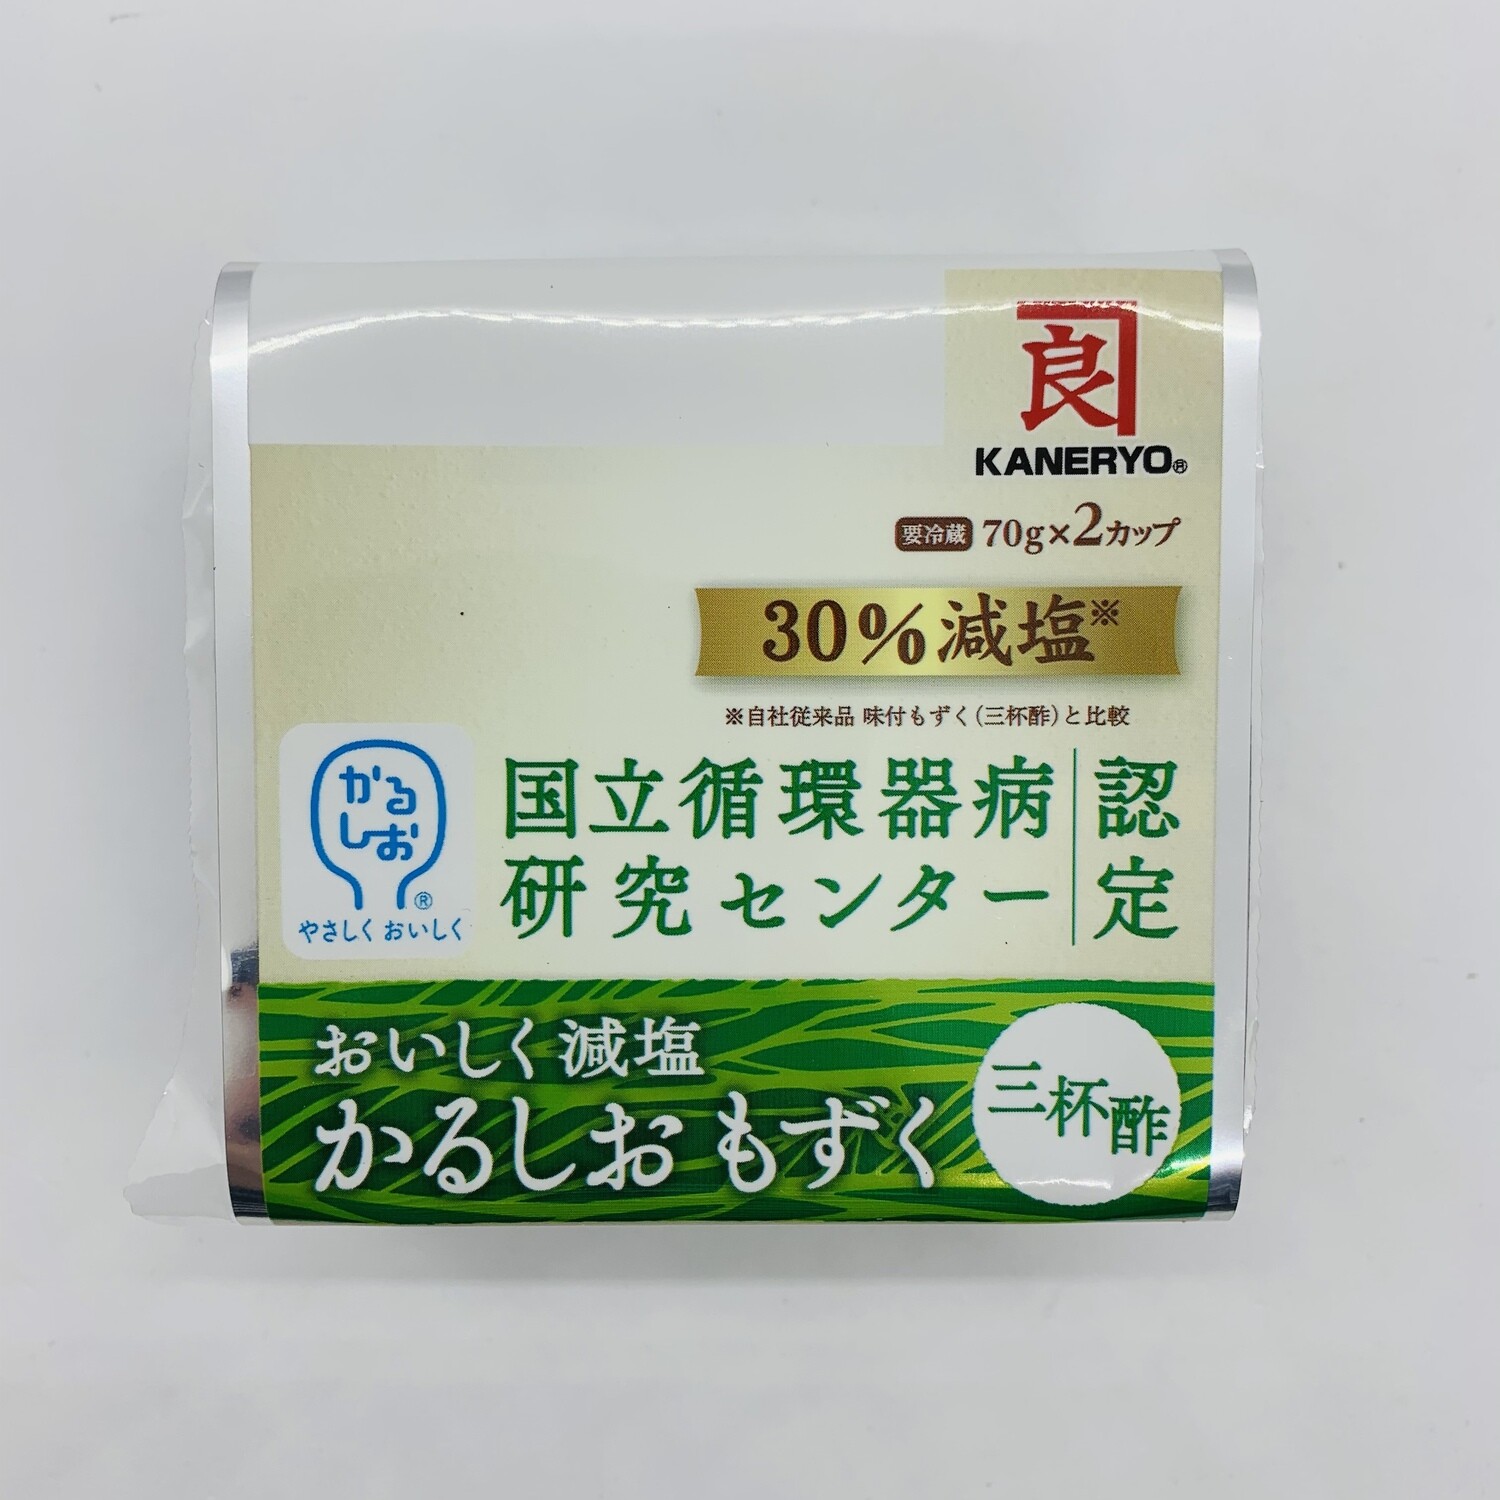 Kaneryo Mozuku 30% Less Salt